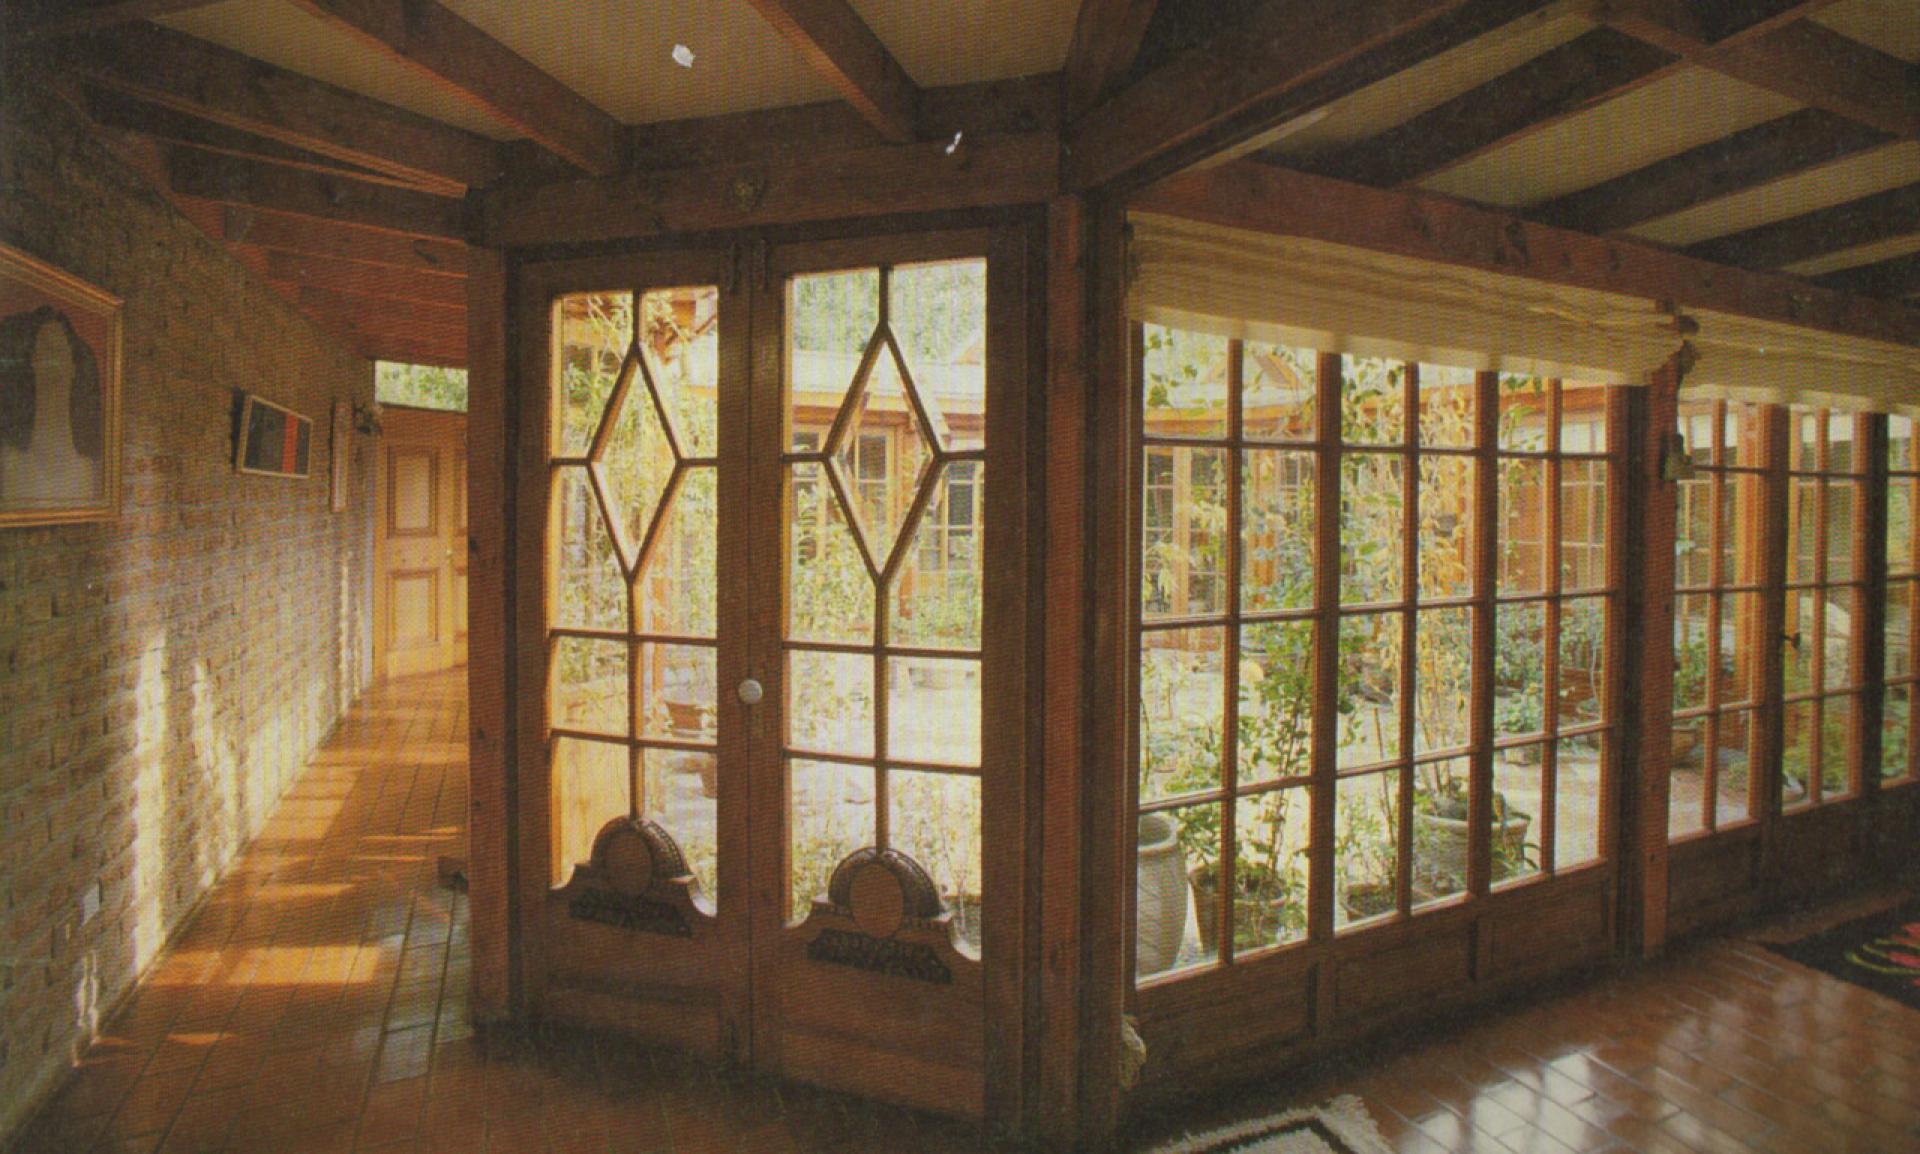 Central enclosed space at Comunidad El Canelo (1986). | Photo by José Pérez